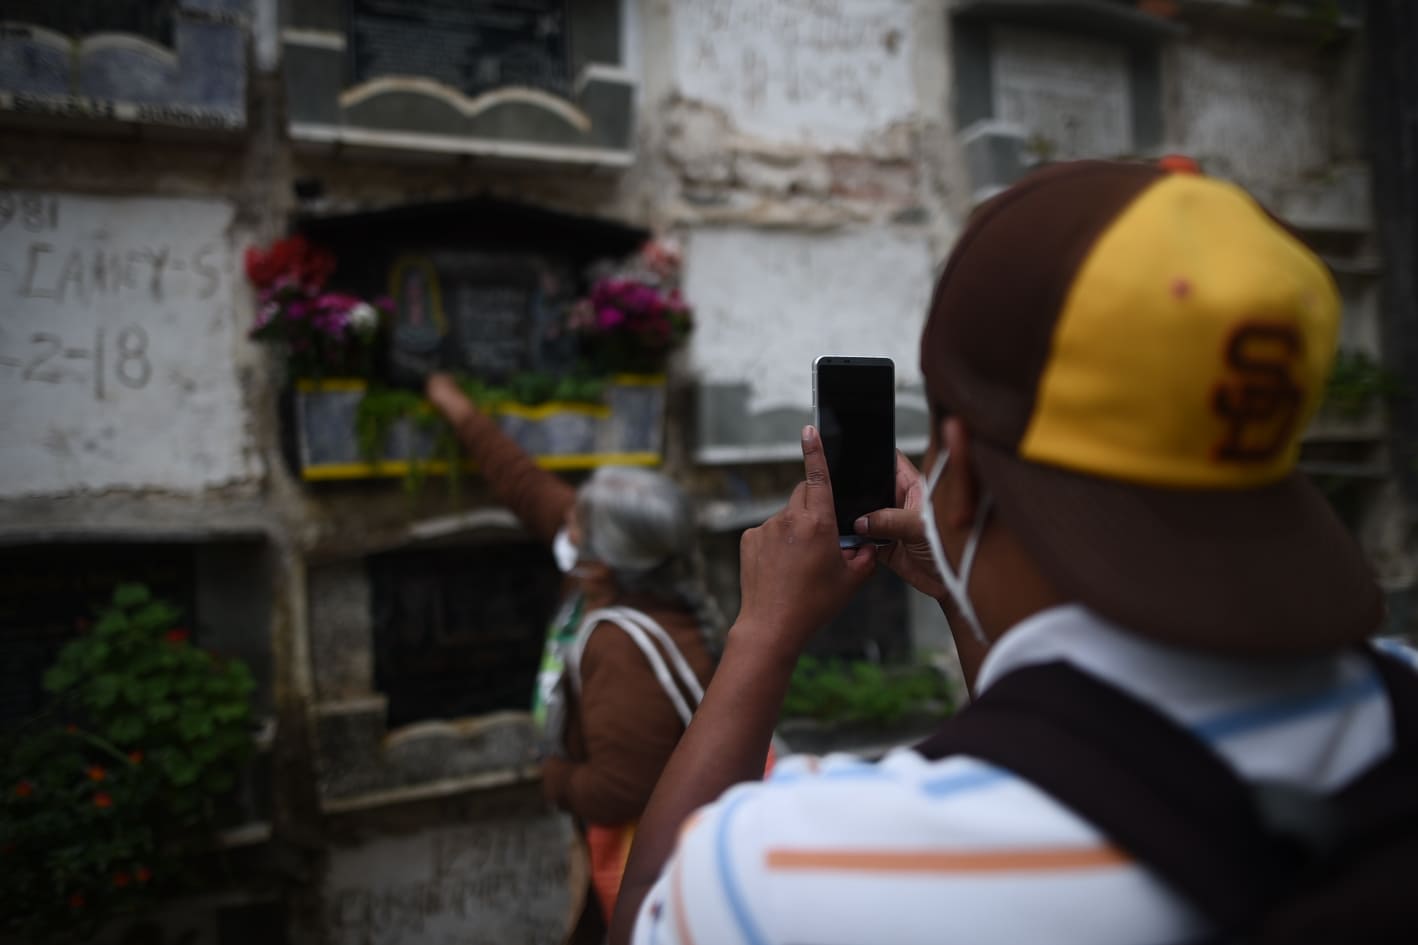 visita a cementerios por Día de los Santos - Covid-19